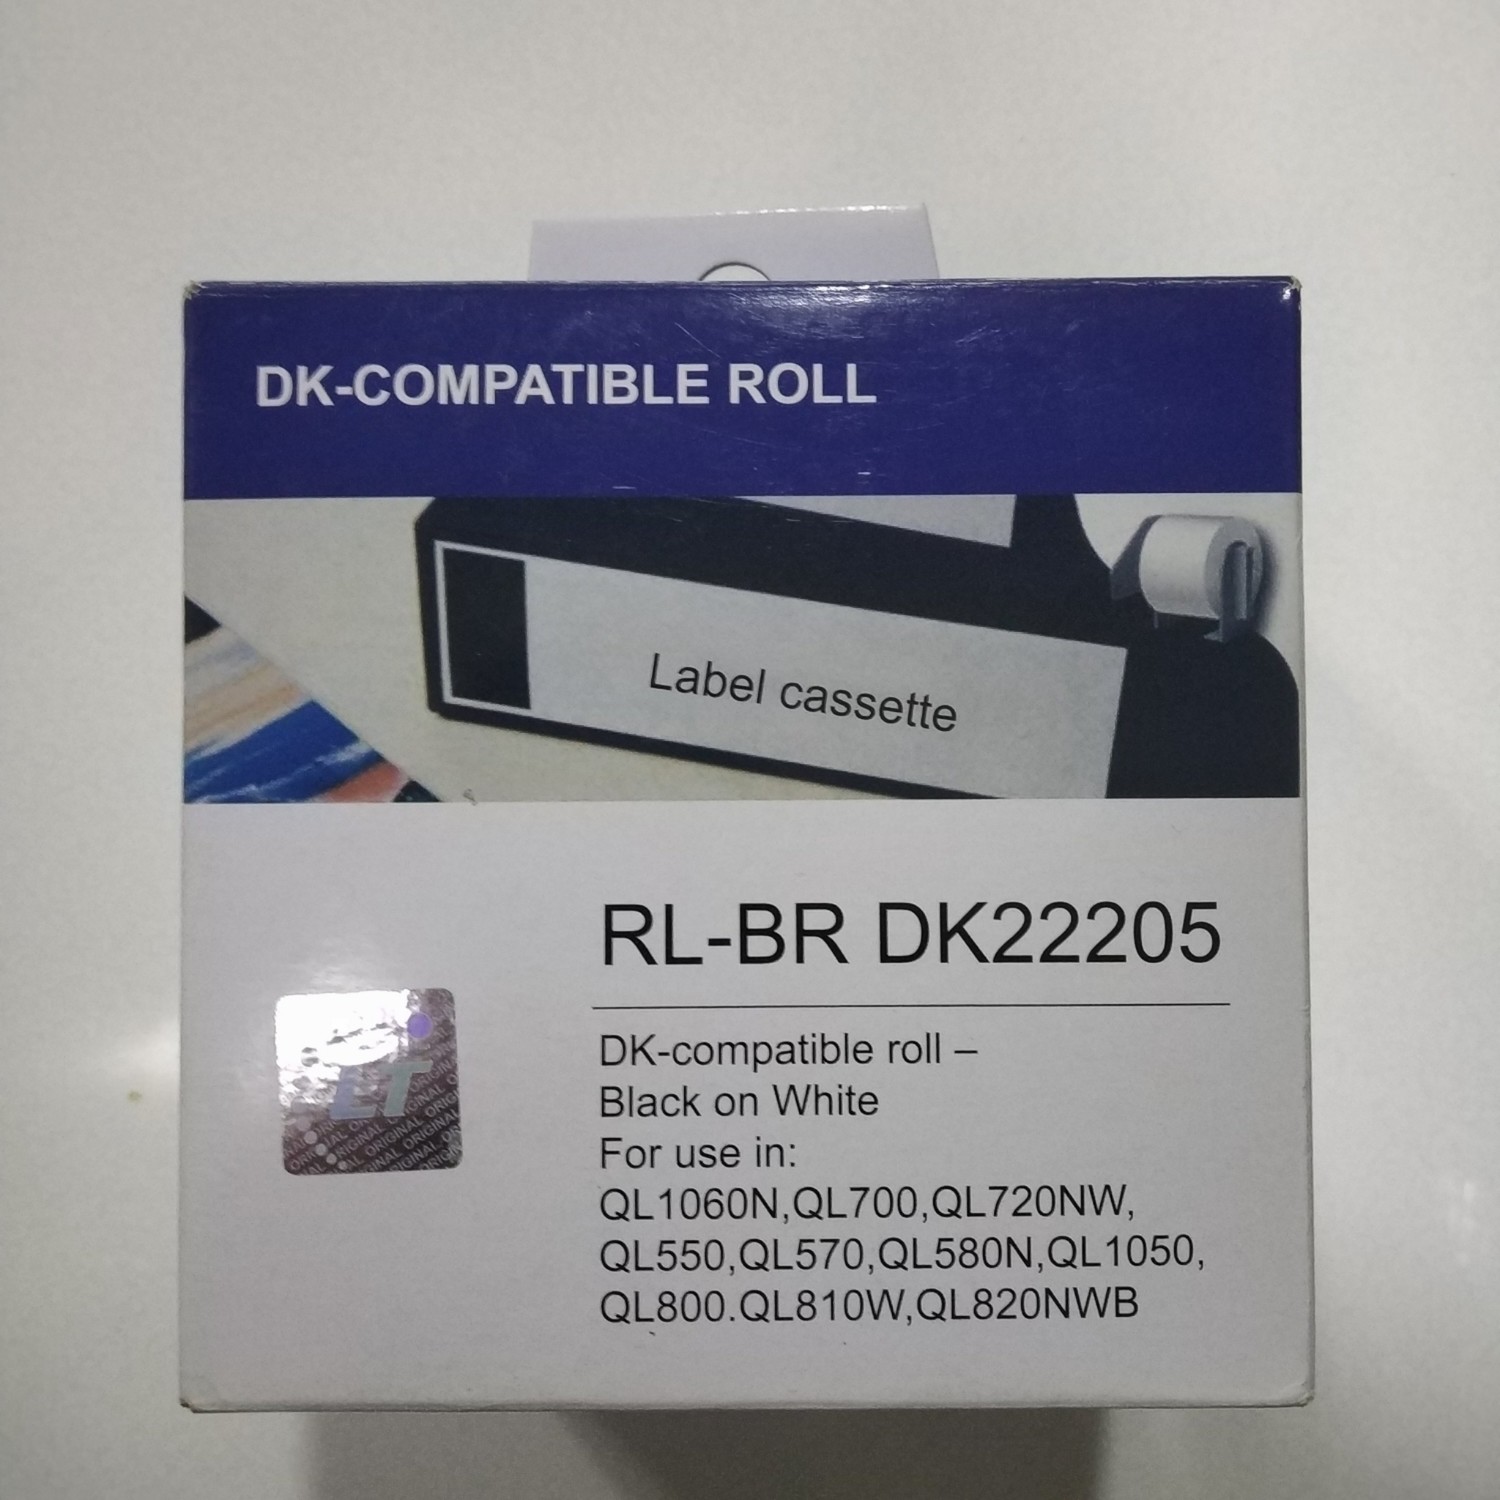 Compatible Roll Label Cassette, Dk 22205 62mm x 30.48metres